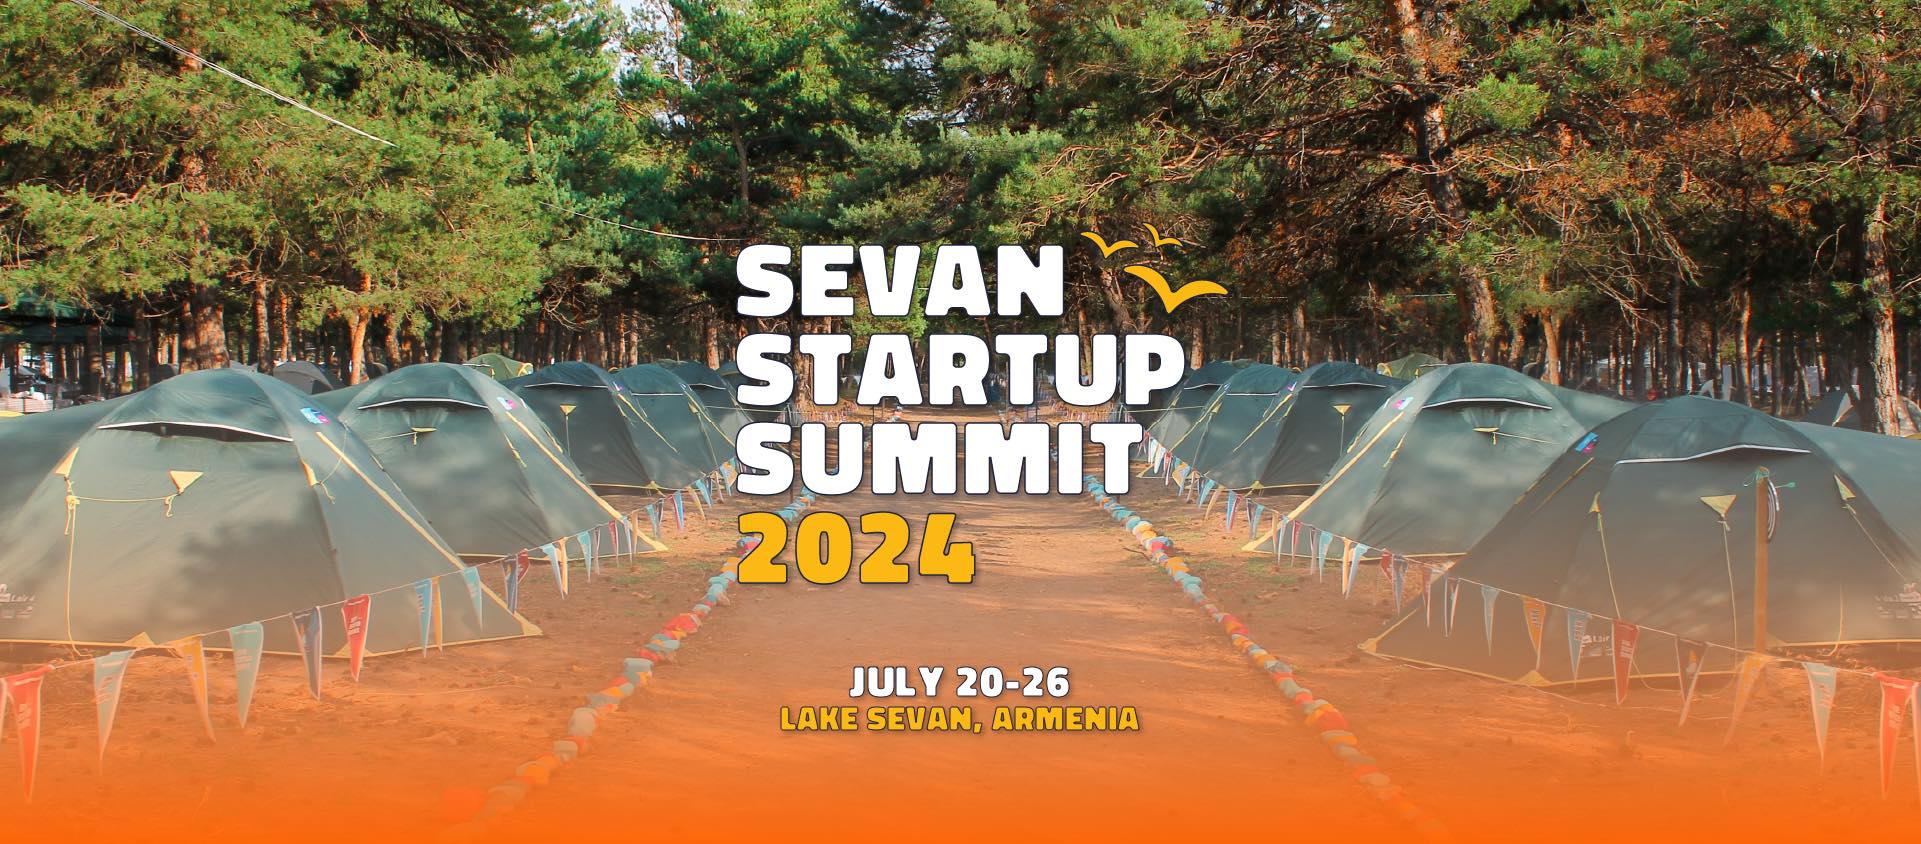 Sevan Startup Summit 2024